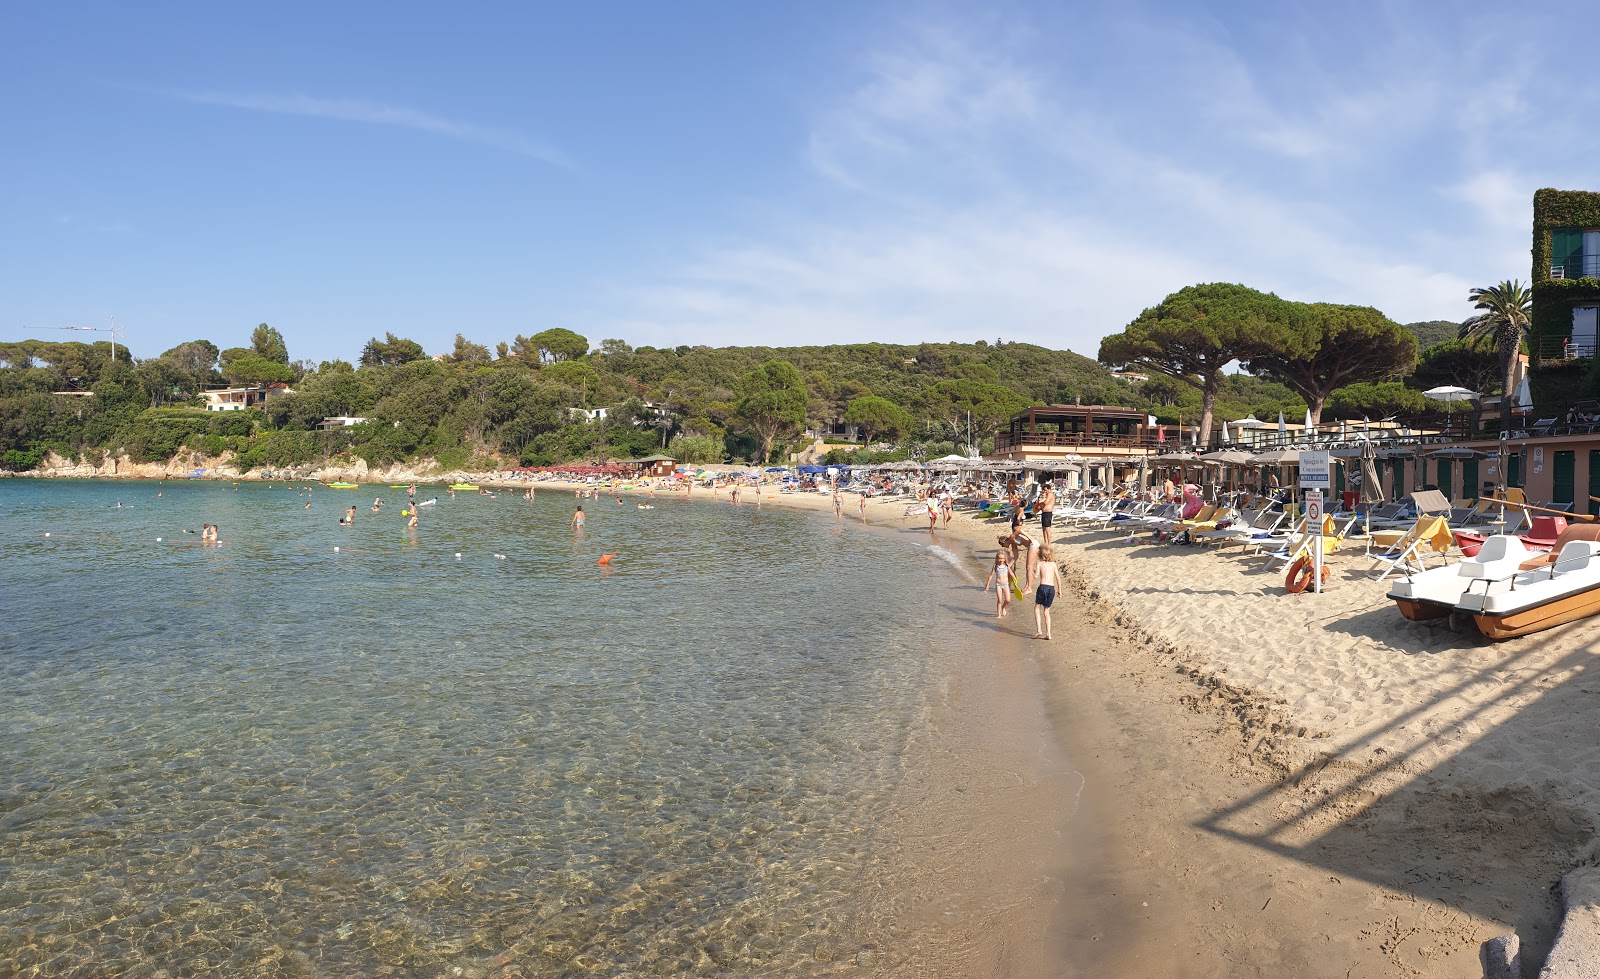 Spartaia Plajı'in fotoğrafı küçük koy ile birlikte